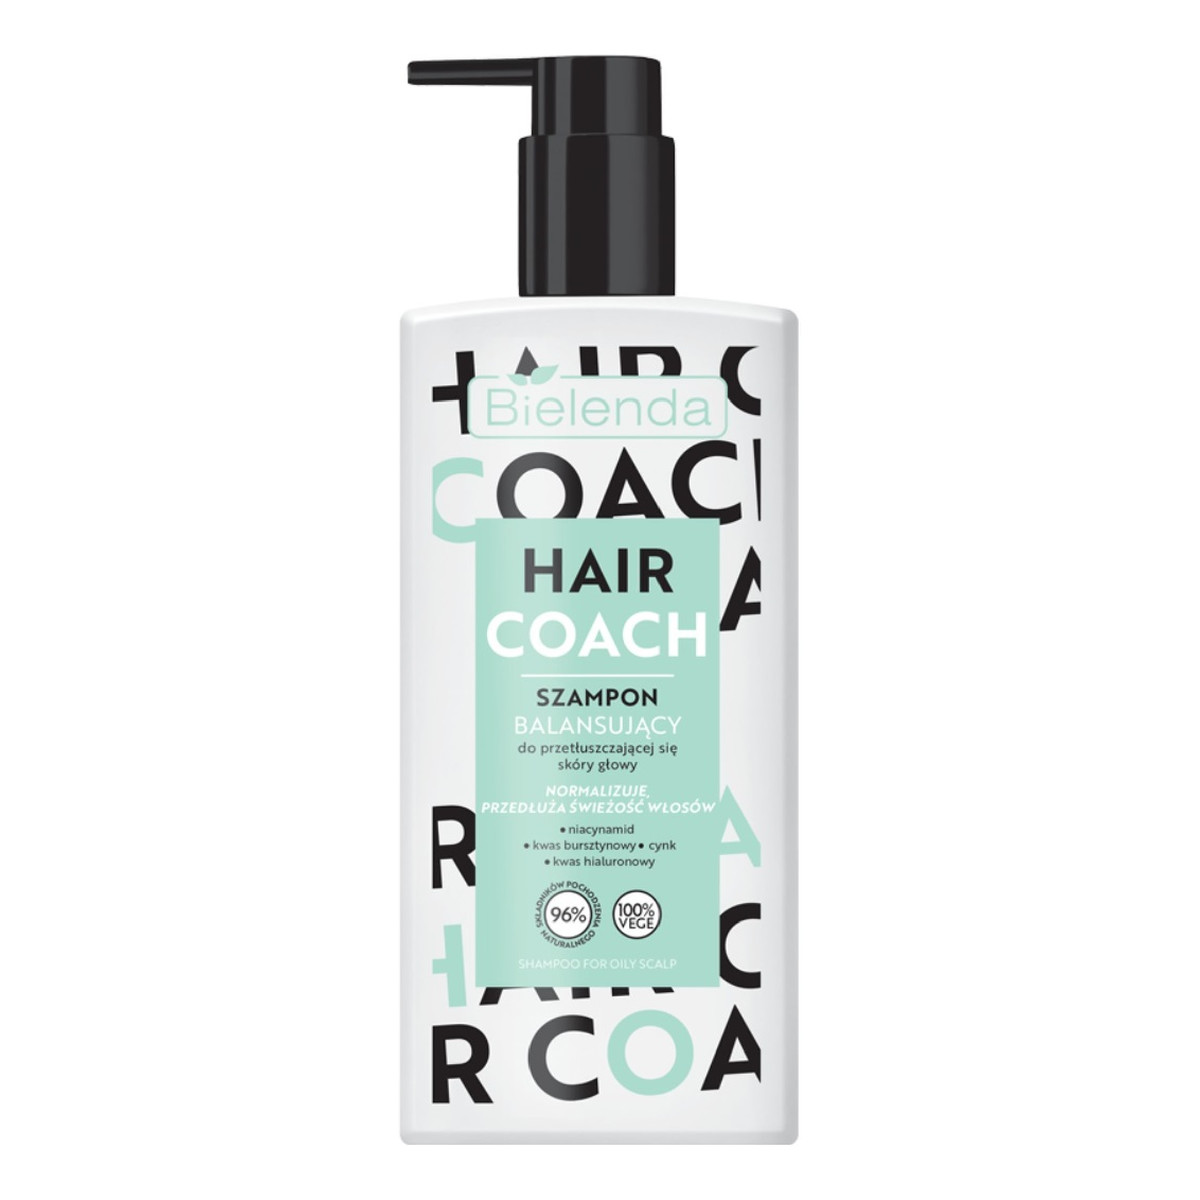 Bielenda Hair coach balansujący szampon do przetłuszczającej się skóry głowy 300ml